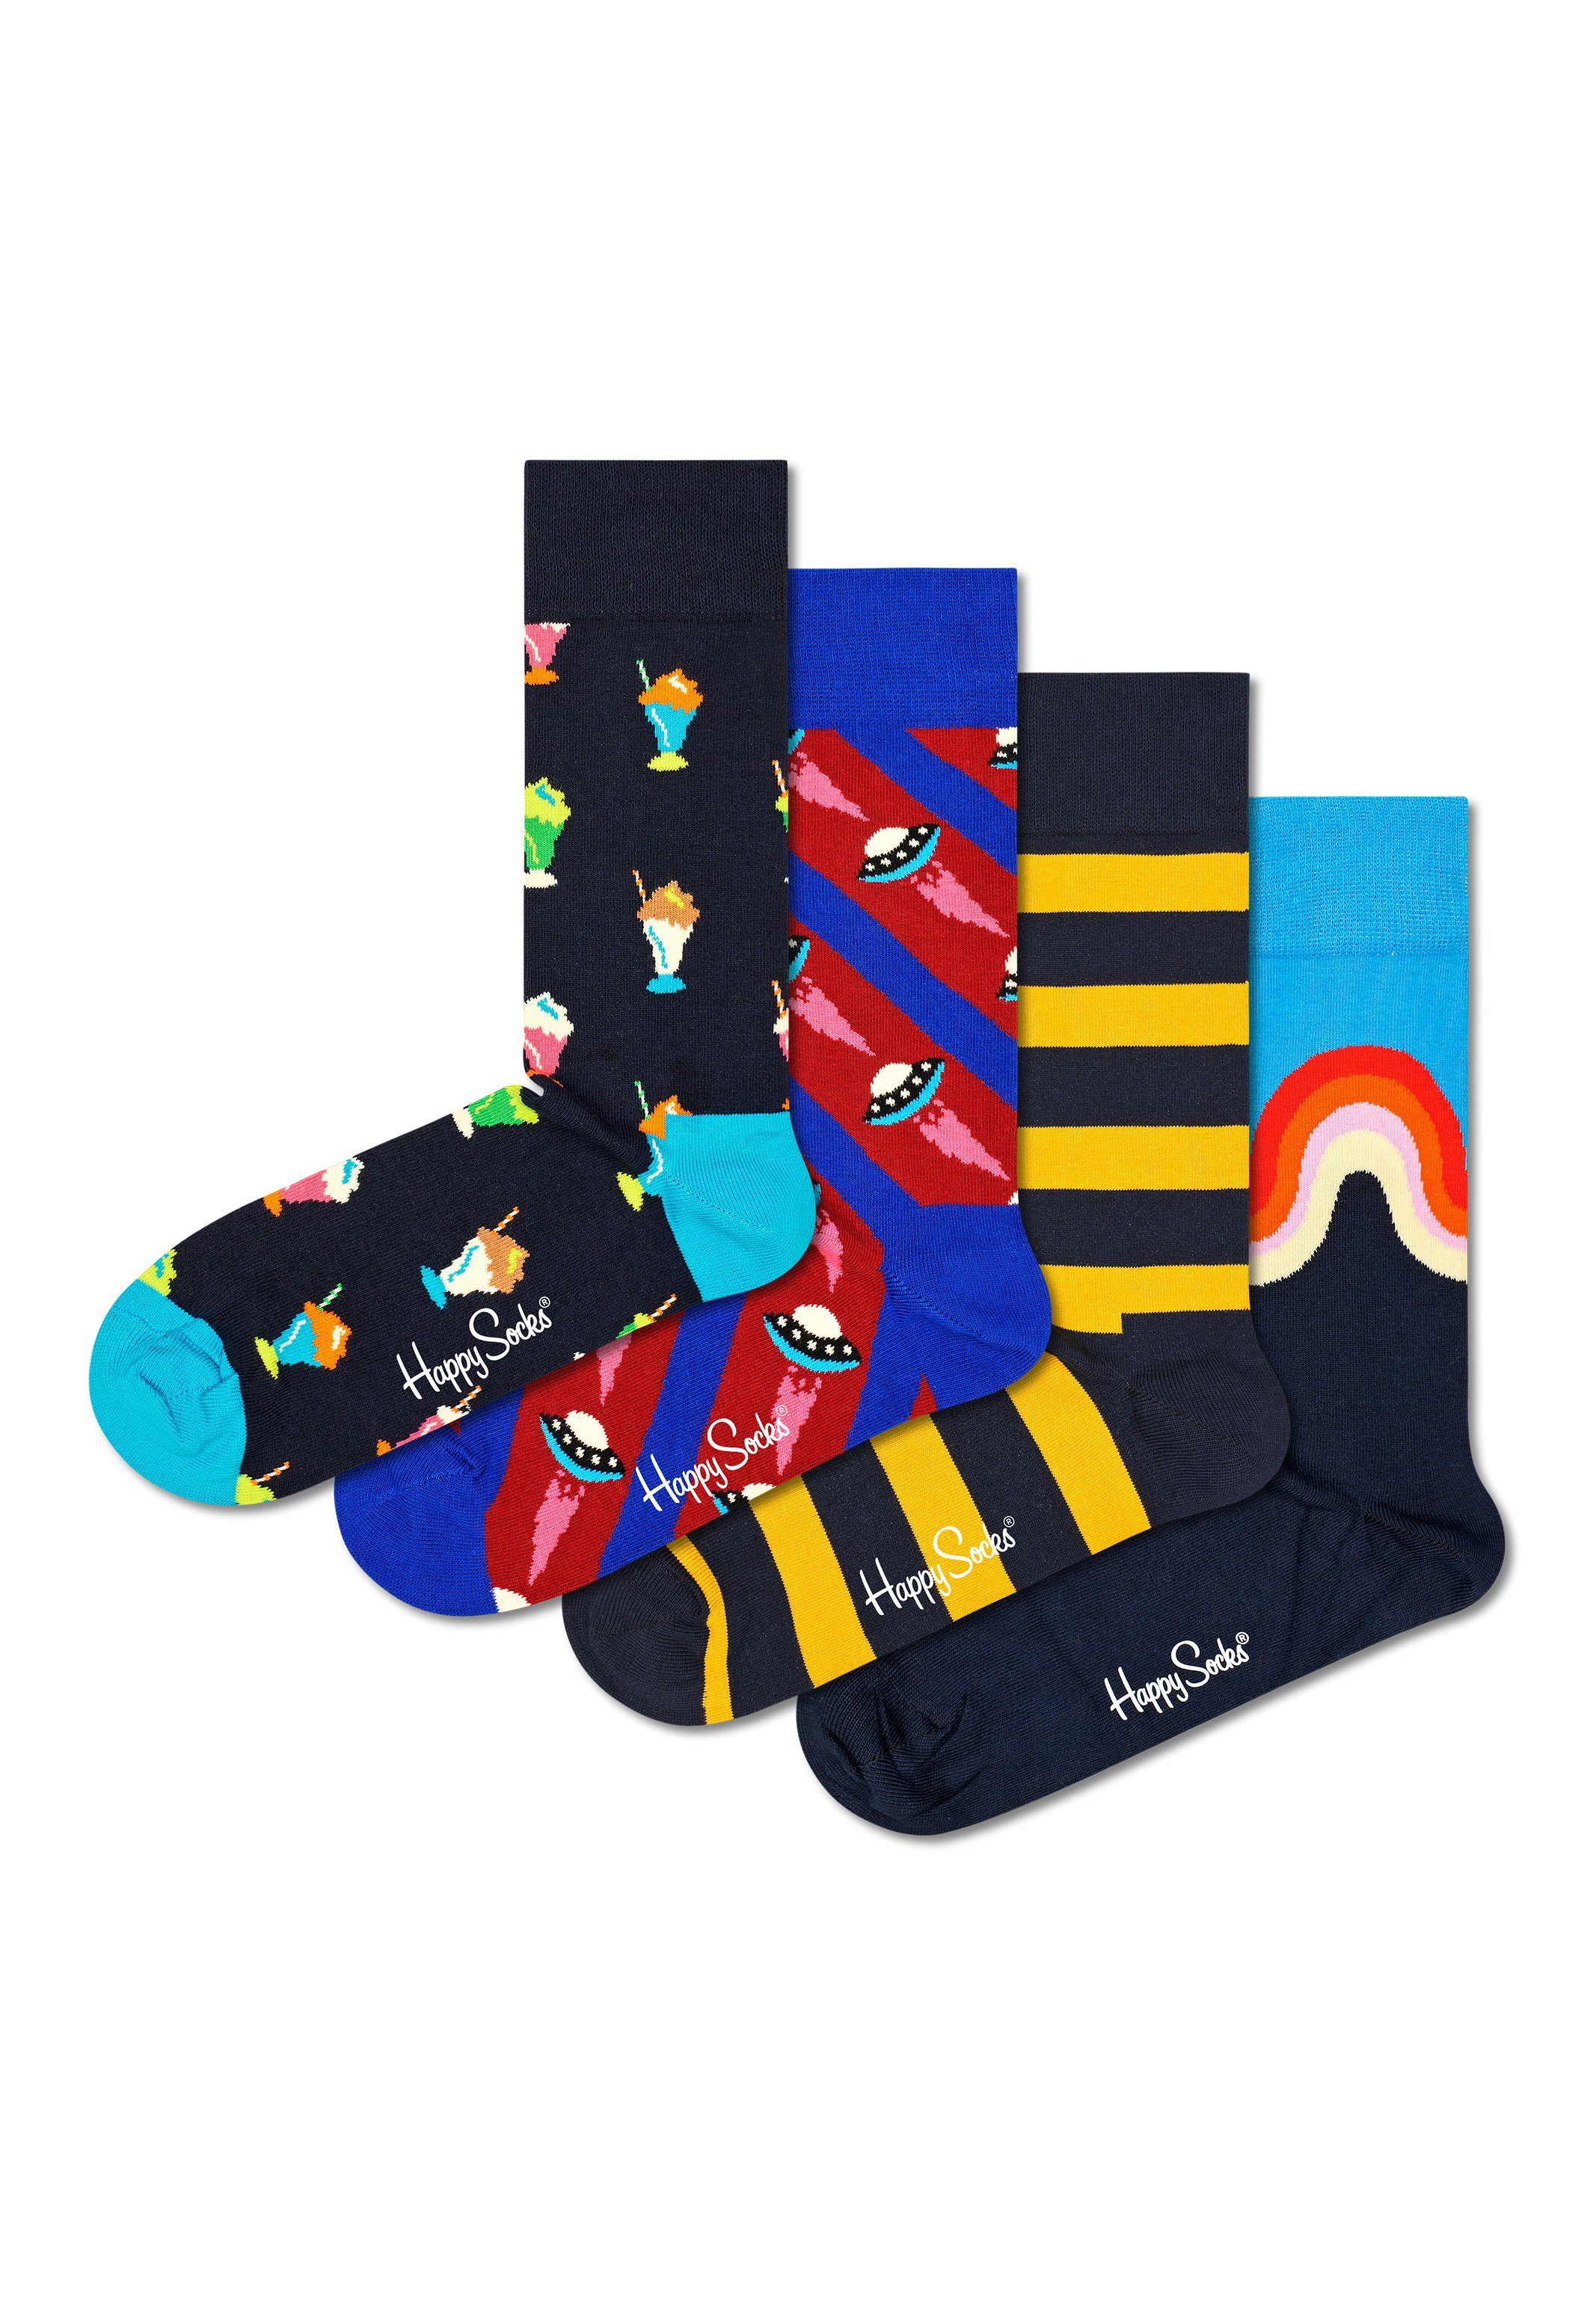 Happy Socks Langsocken Navy Geschenk Box (Spar-Set, 4-Paar) 4 Paar Socken - Baumwolle - 4 Paar bunte Socken in einer Geschenkbox Navy2